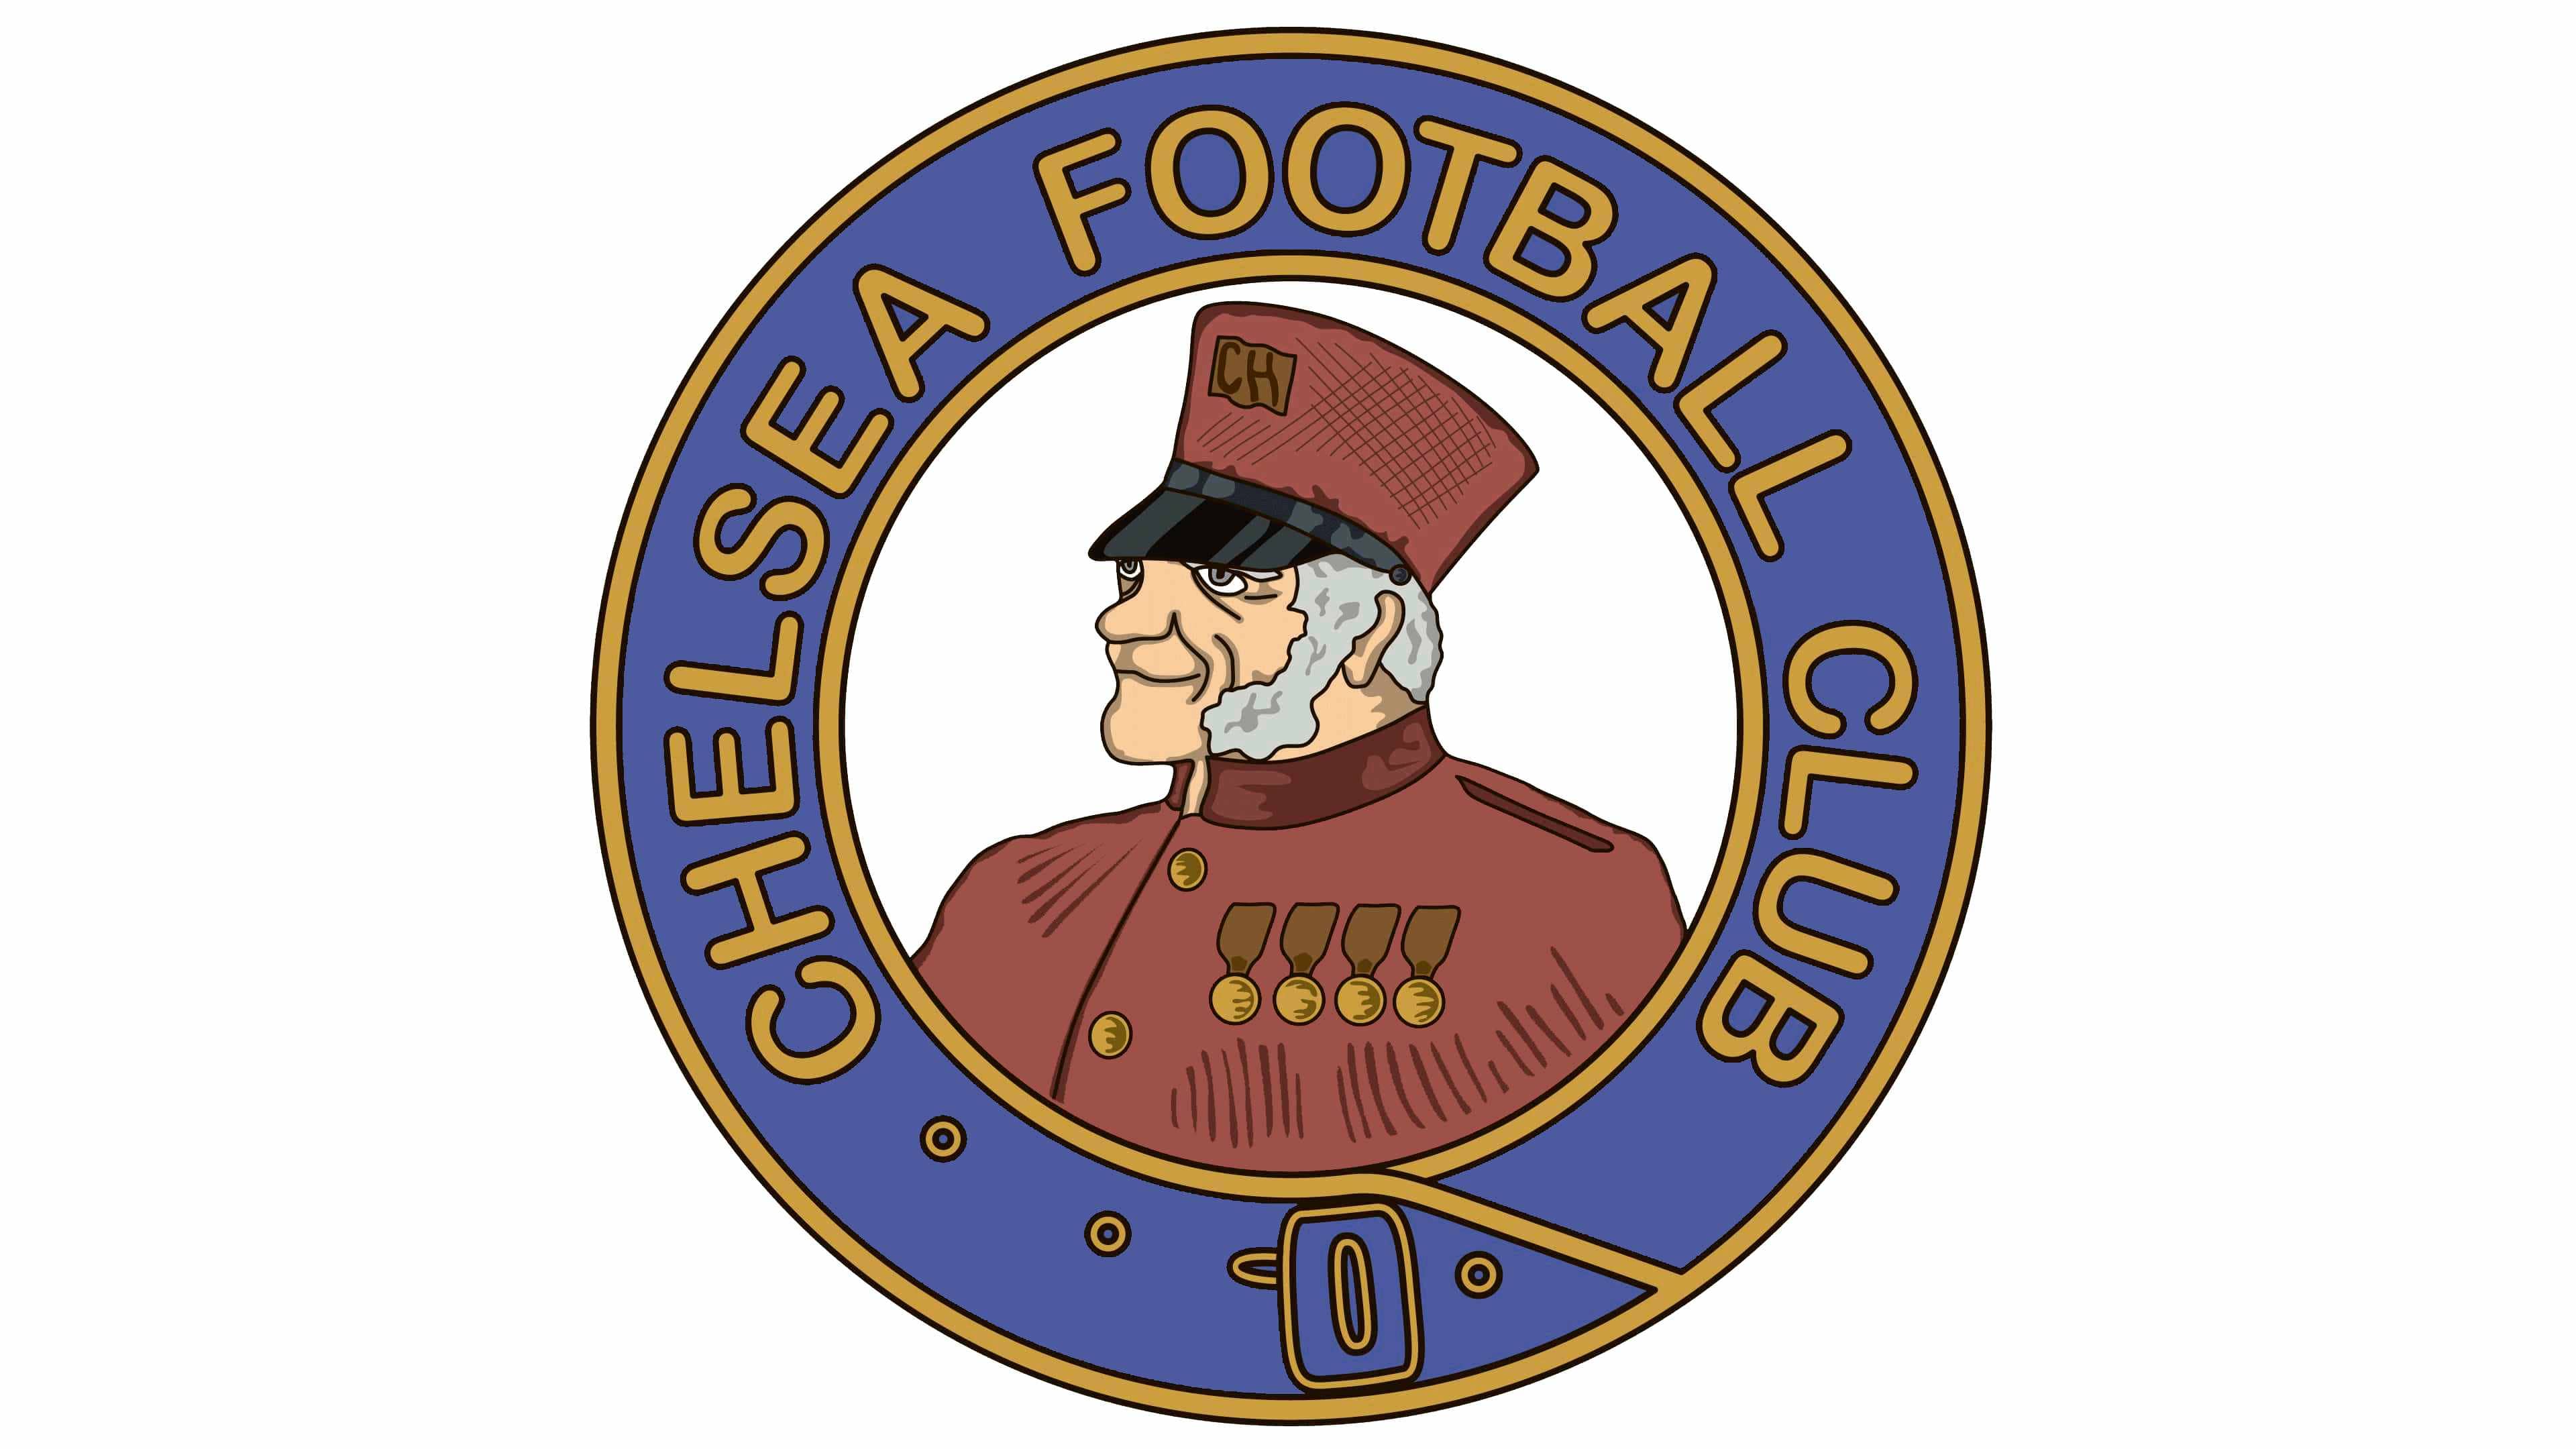 Chelsea logo - Marques et logos: histoire et signification ...